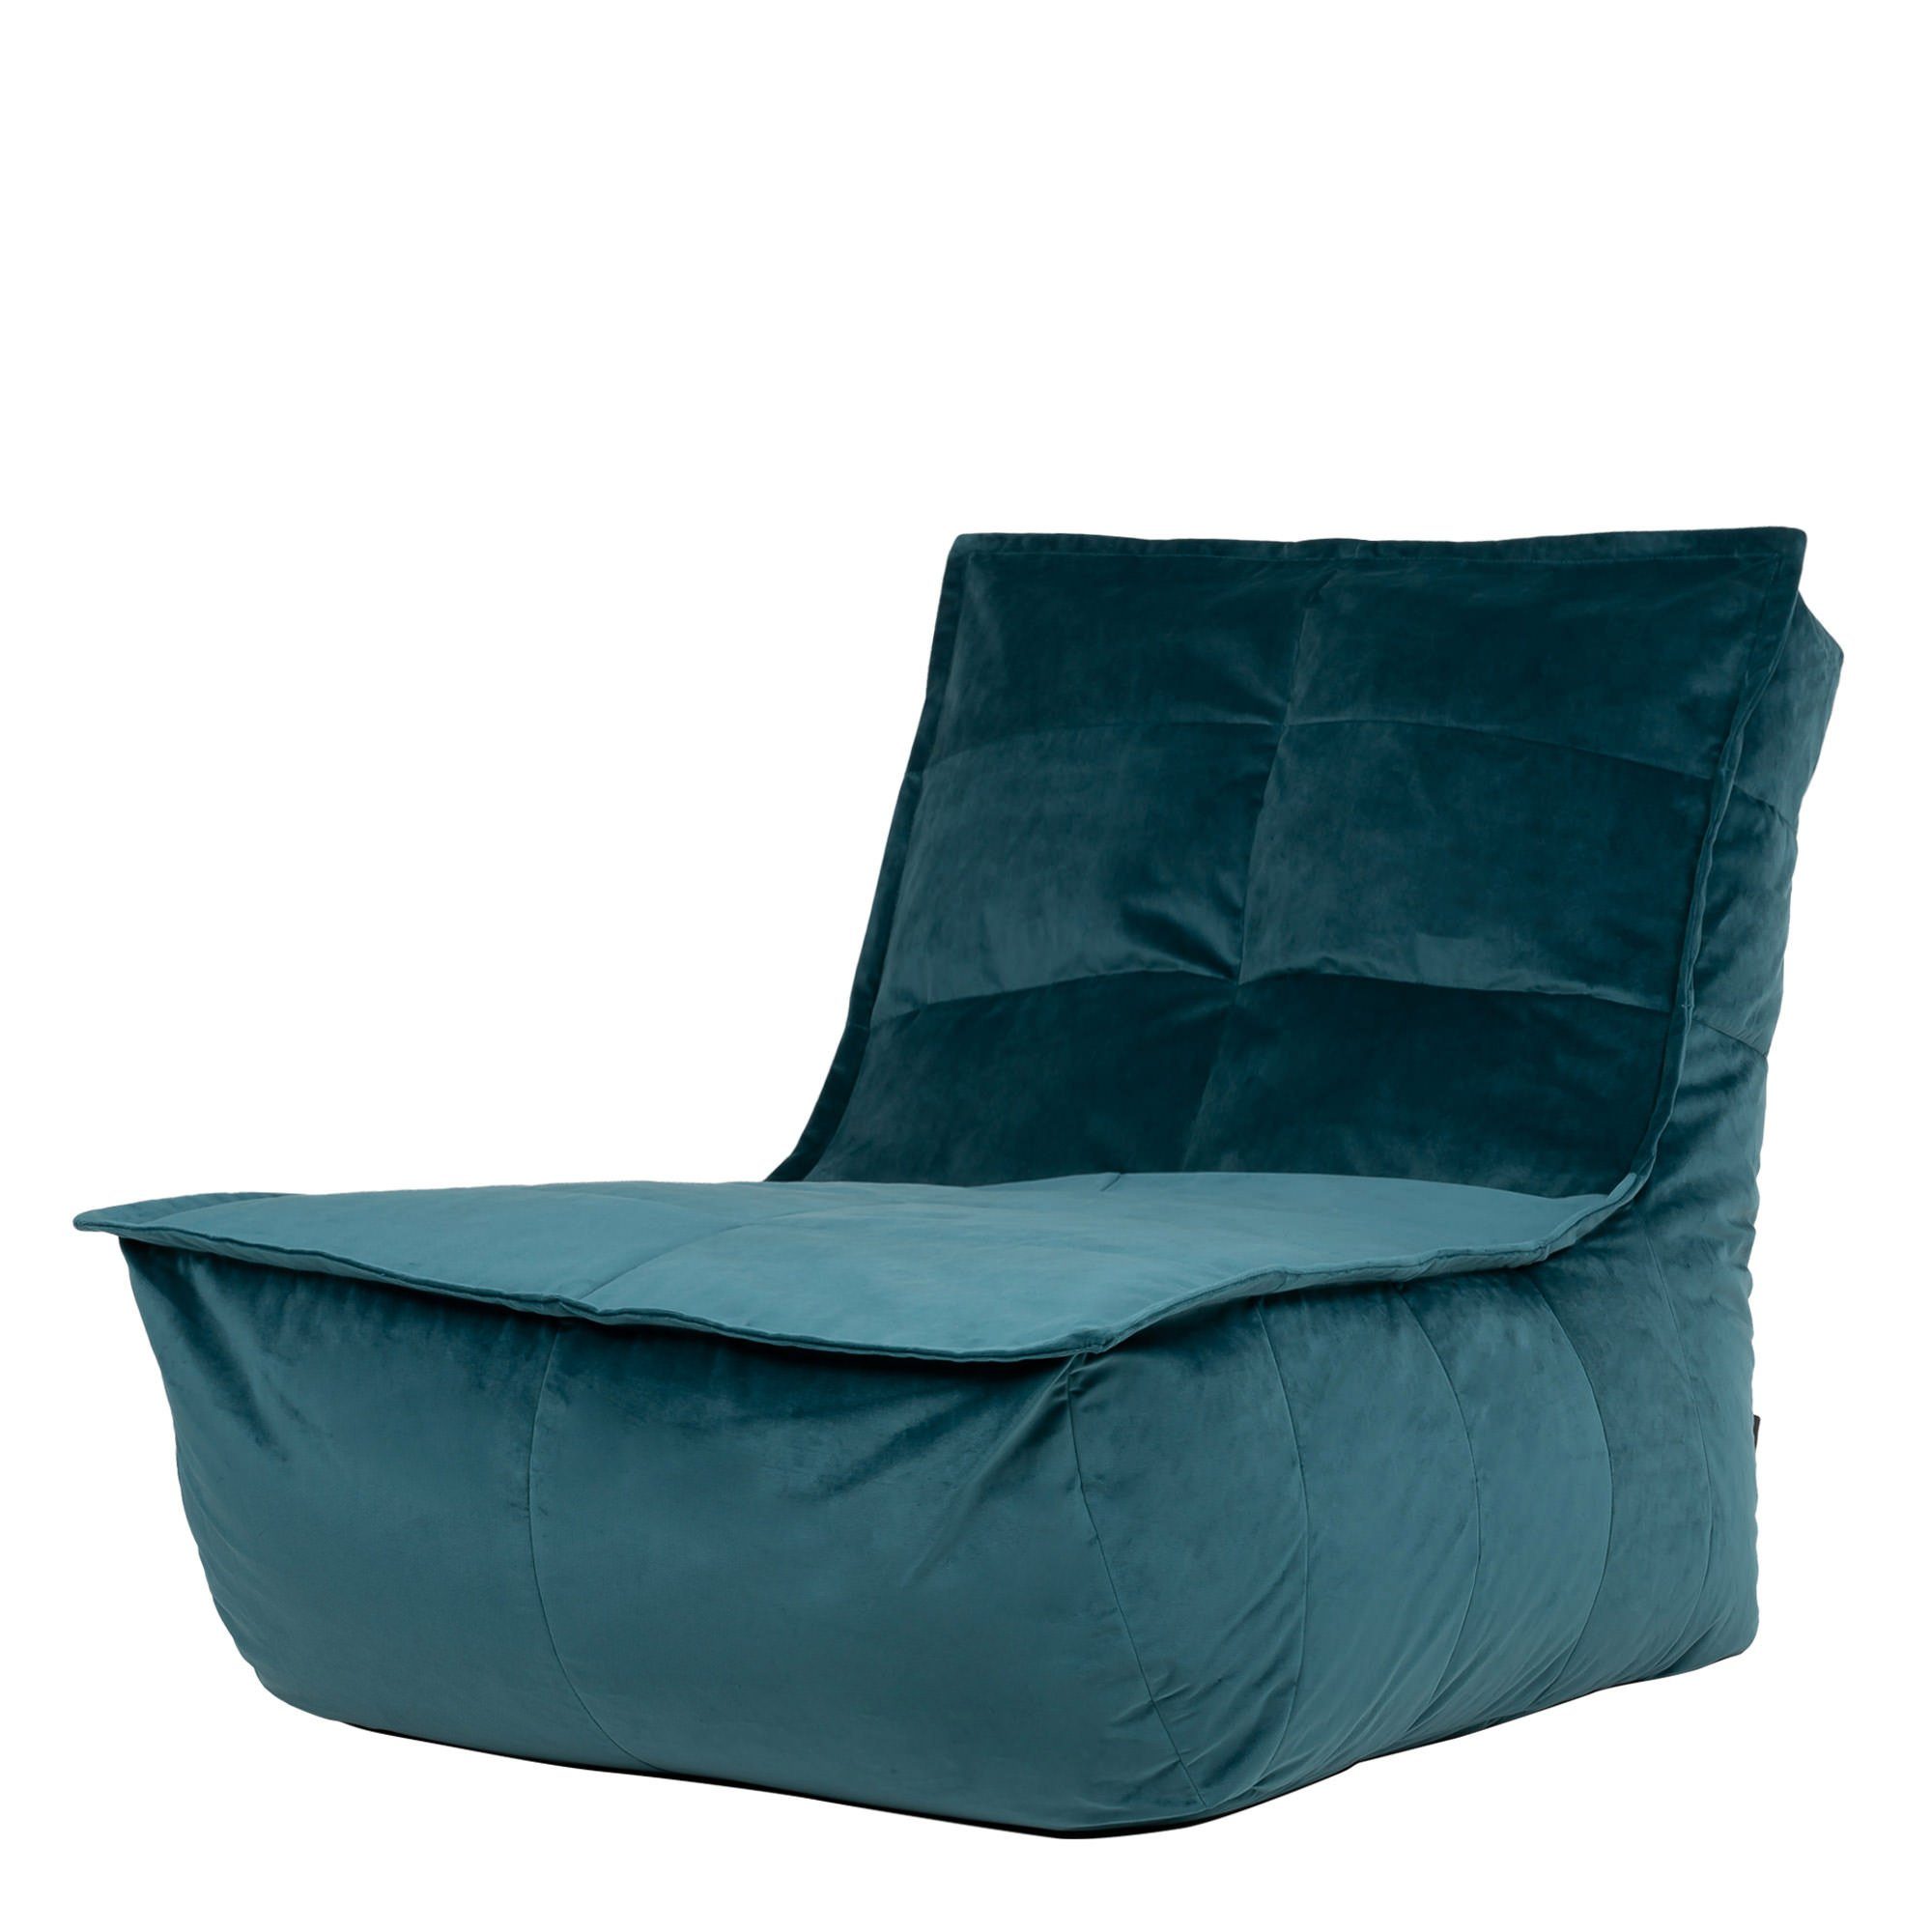 Sitzsack-Liege aus Sitzsack blaugrün Plüschsamt icon „Dolce“